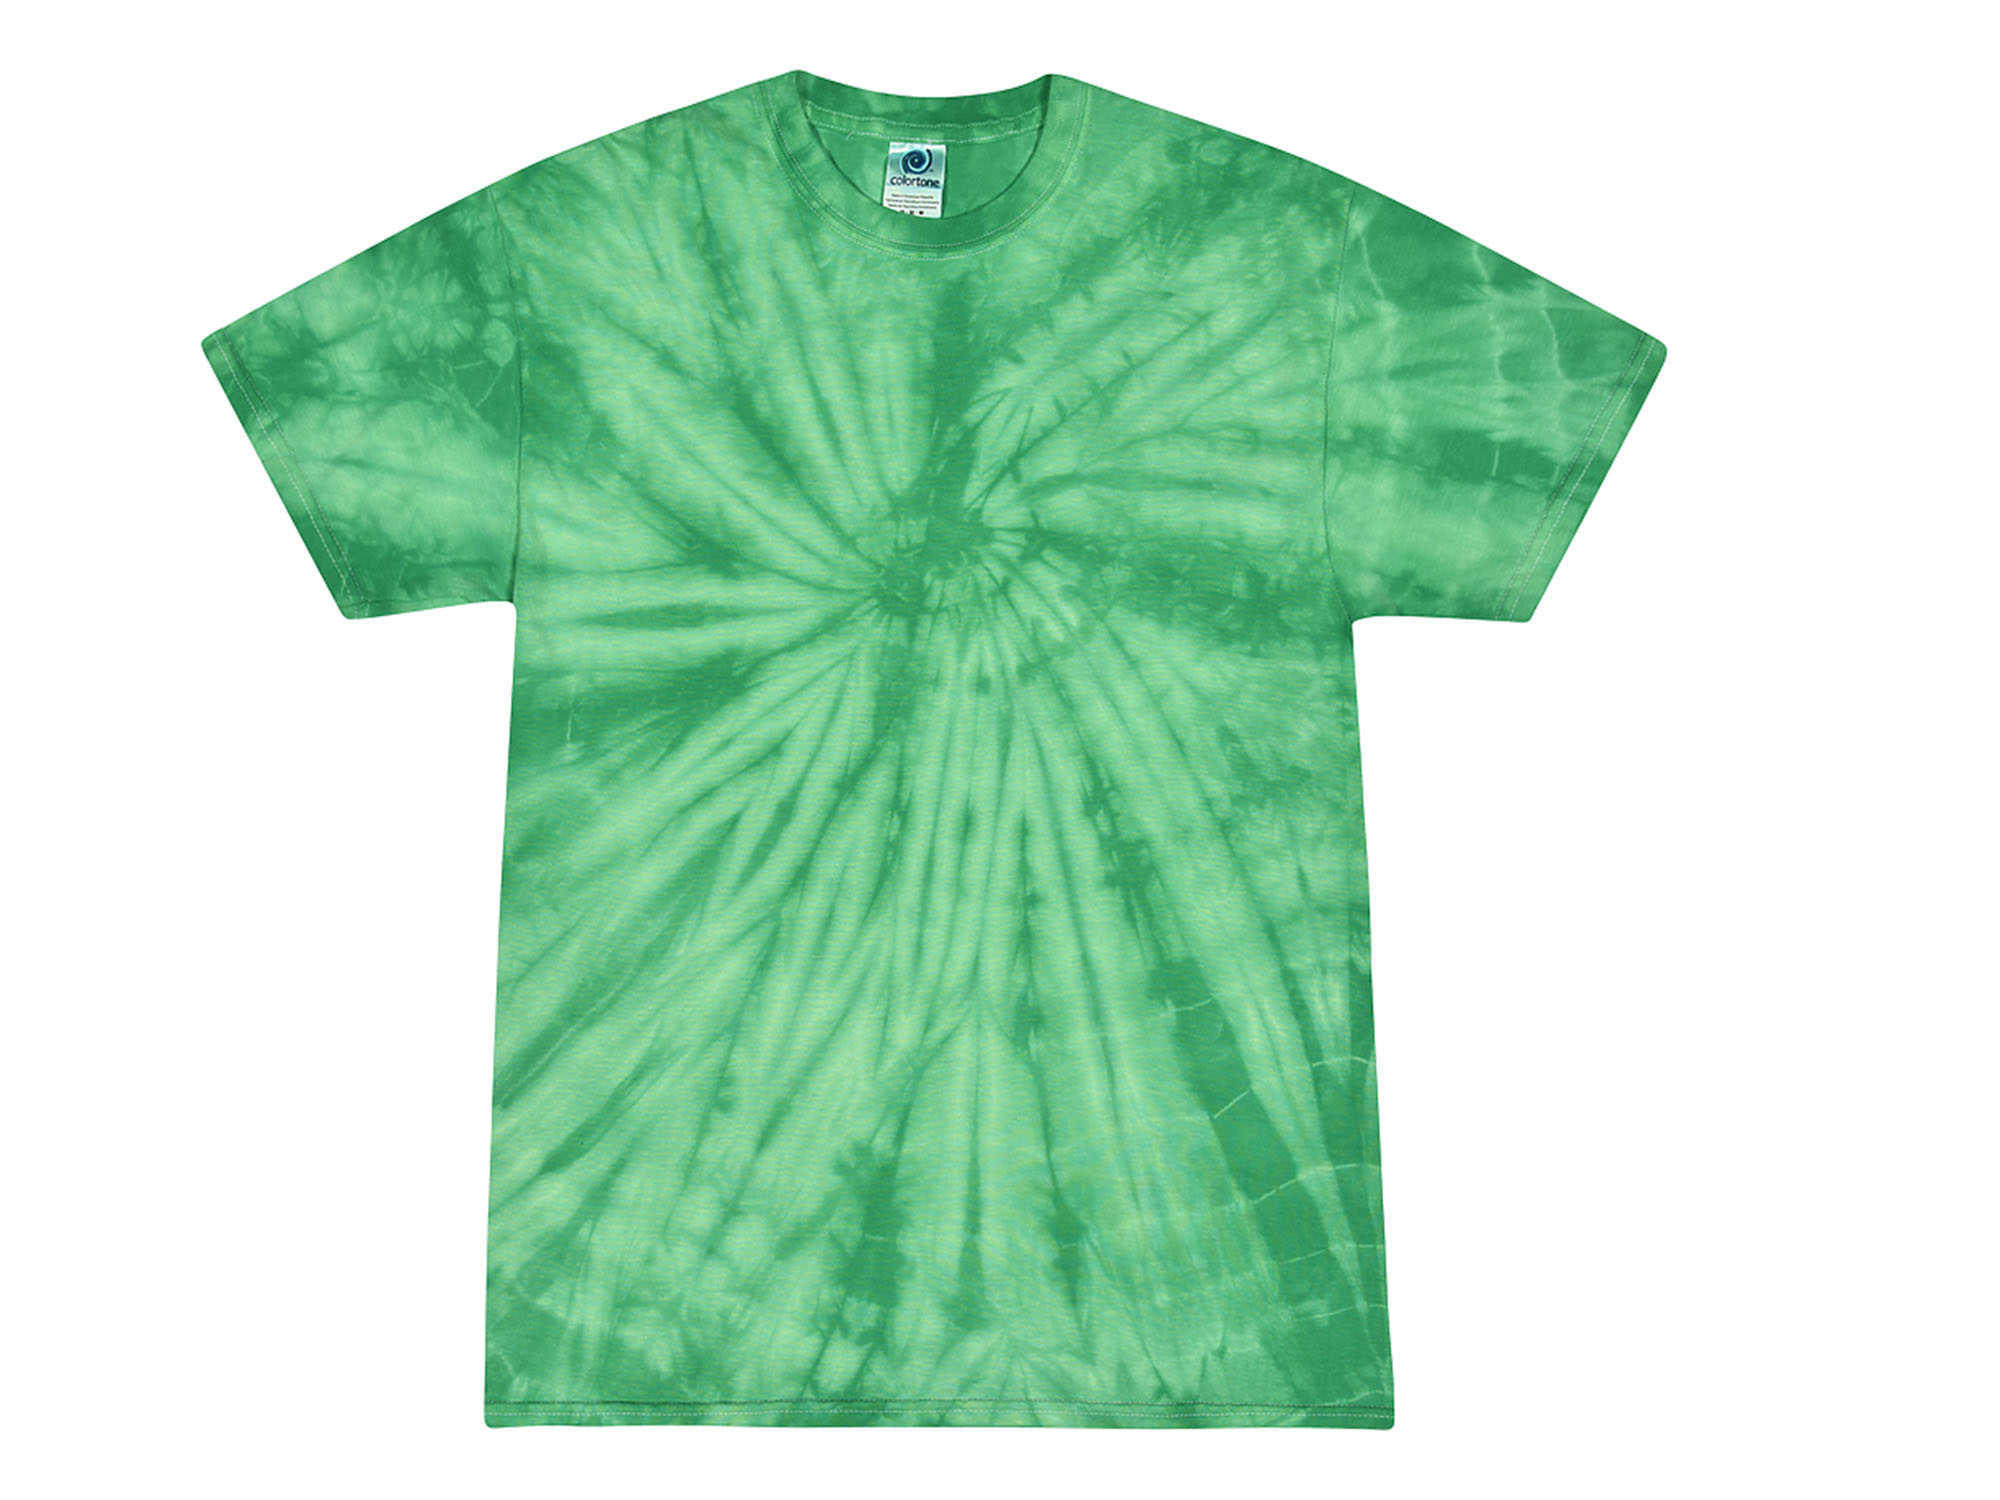 Green Kelly Tie Dye T-Shirt - Tie Dye Space